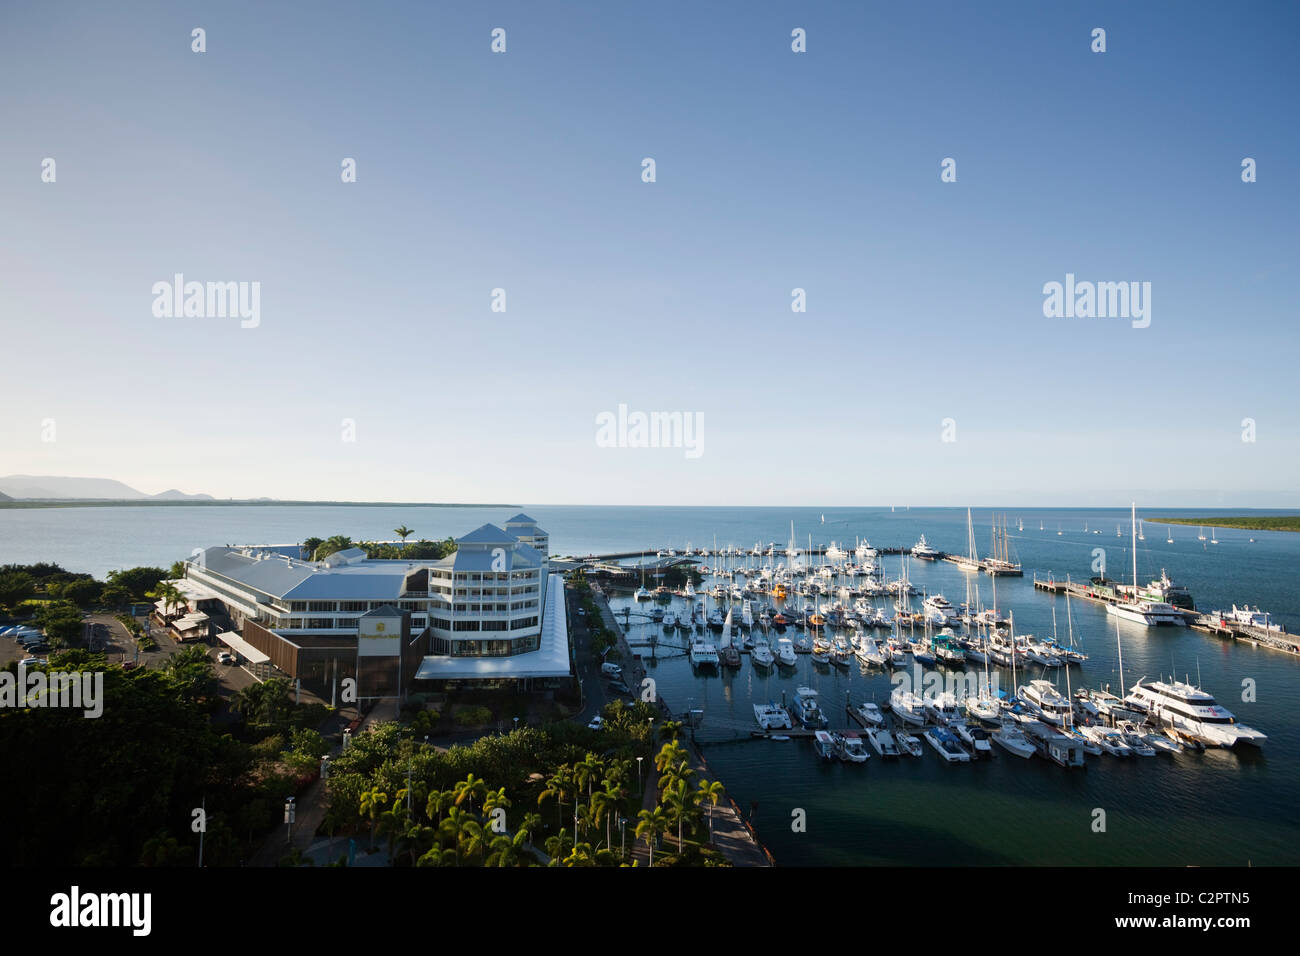 L'hotel Shangri-La e Marlin Marina al tramonto. Cairns, Queensland, Australia Foto Stock